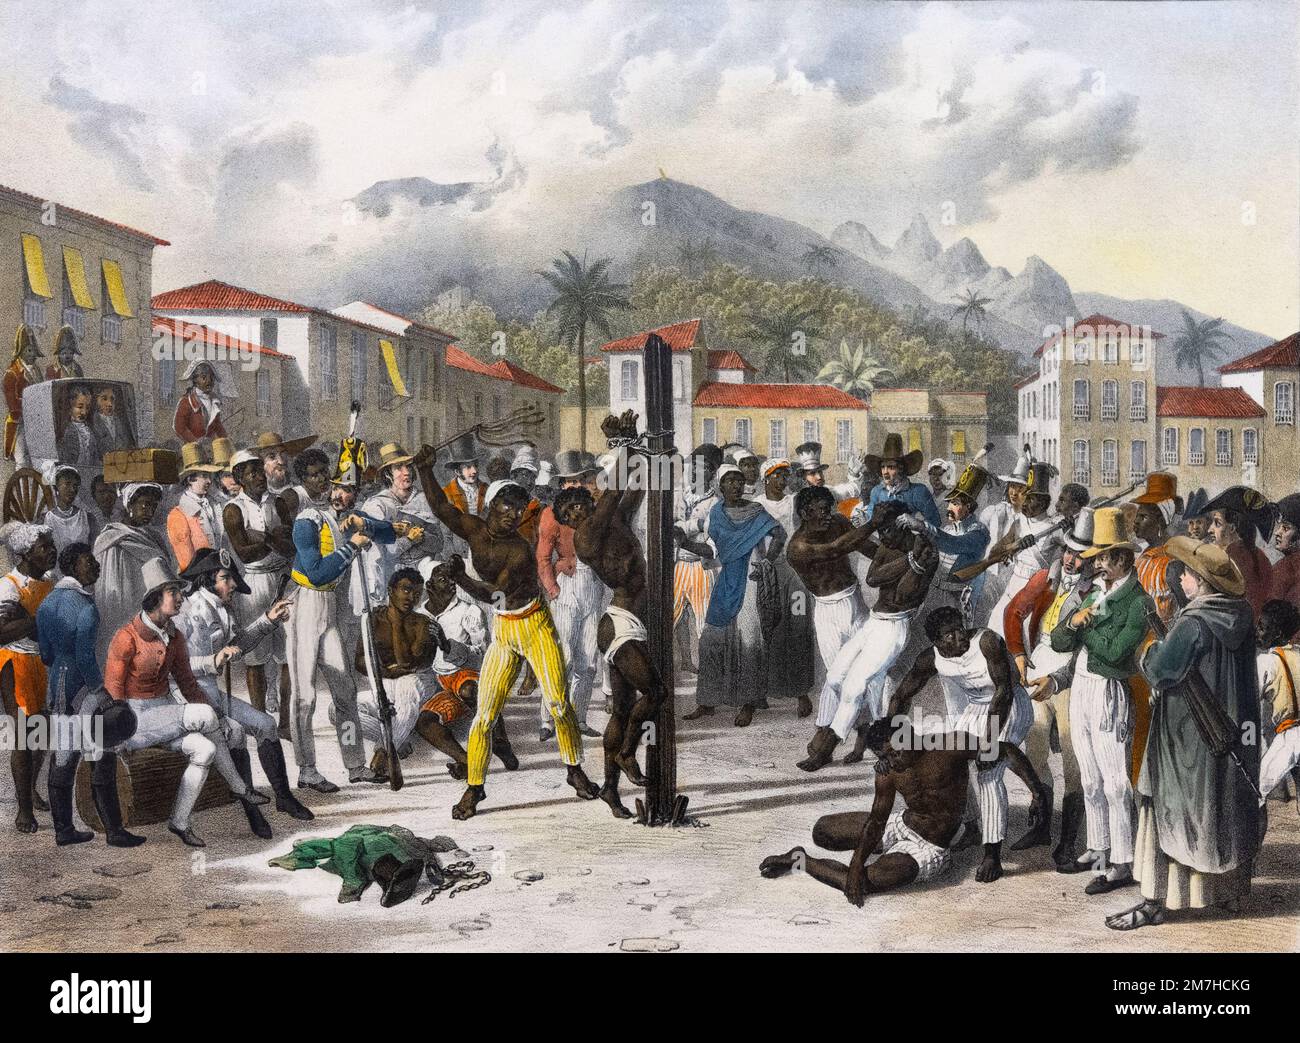 Una ilustración de la flagelación pública de un esclavo en el Brasil del siglo 19th, por Johann Moritz Rugendas Foto de stock